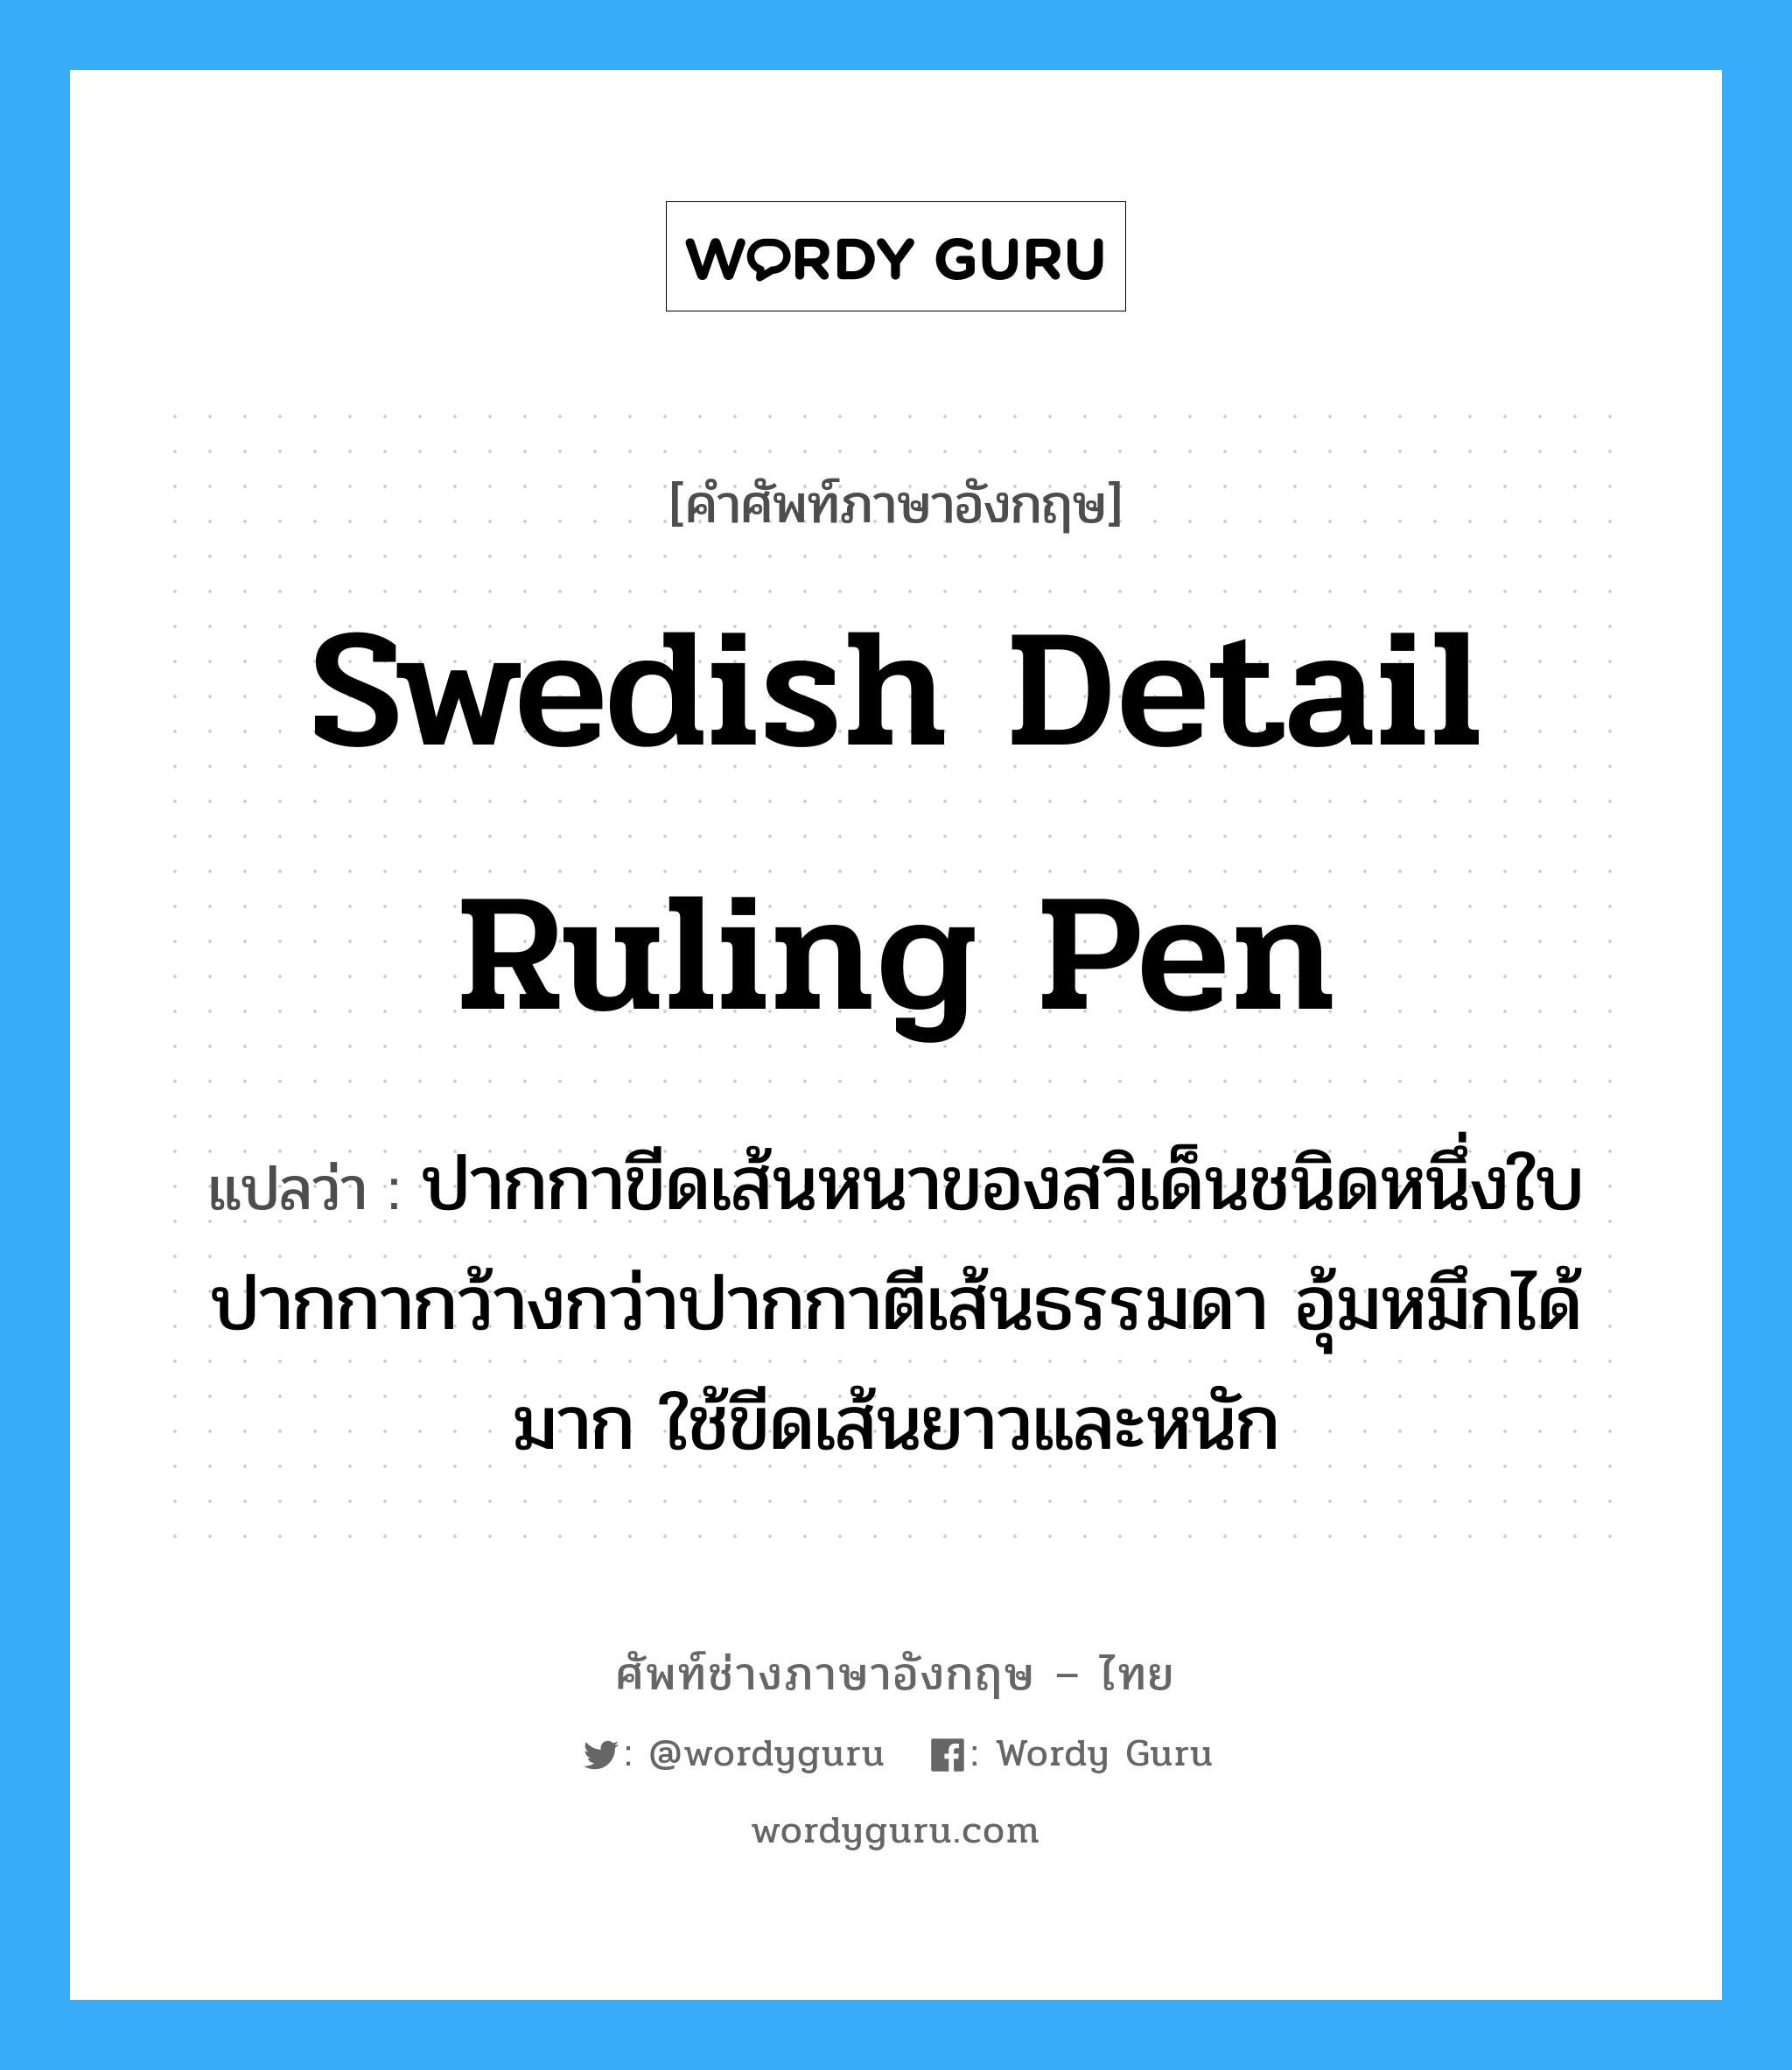 Swedish detail ruling pen แปลว่า?, คำศัพท์ช่างภาษาอังกฤษ - ไทย Swedish detail ruling pen คำศัพท์ภาษาอังกฤษ Swedish detail ruling pen แปลว่า ปากกาขีดเส้นหนาของสวิเด็นชนิดหนึ่งใบปากกากว้างกว่าปากกาตีเส้นธรรมดา อุ้มหมึกได้มาก ใช้ขีดเส้นยาวและหนัก